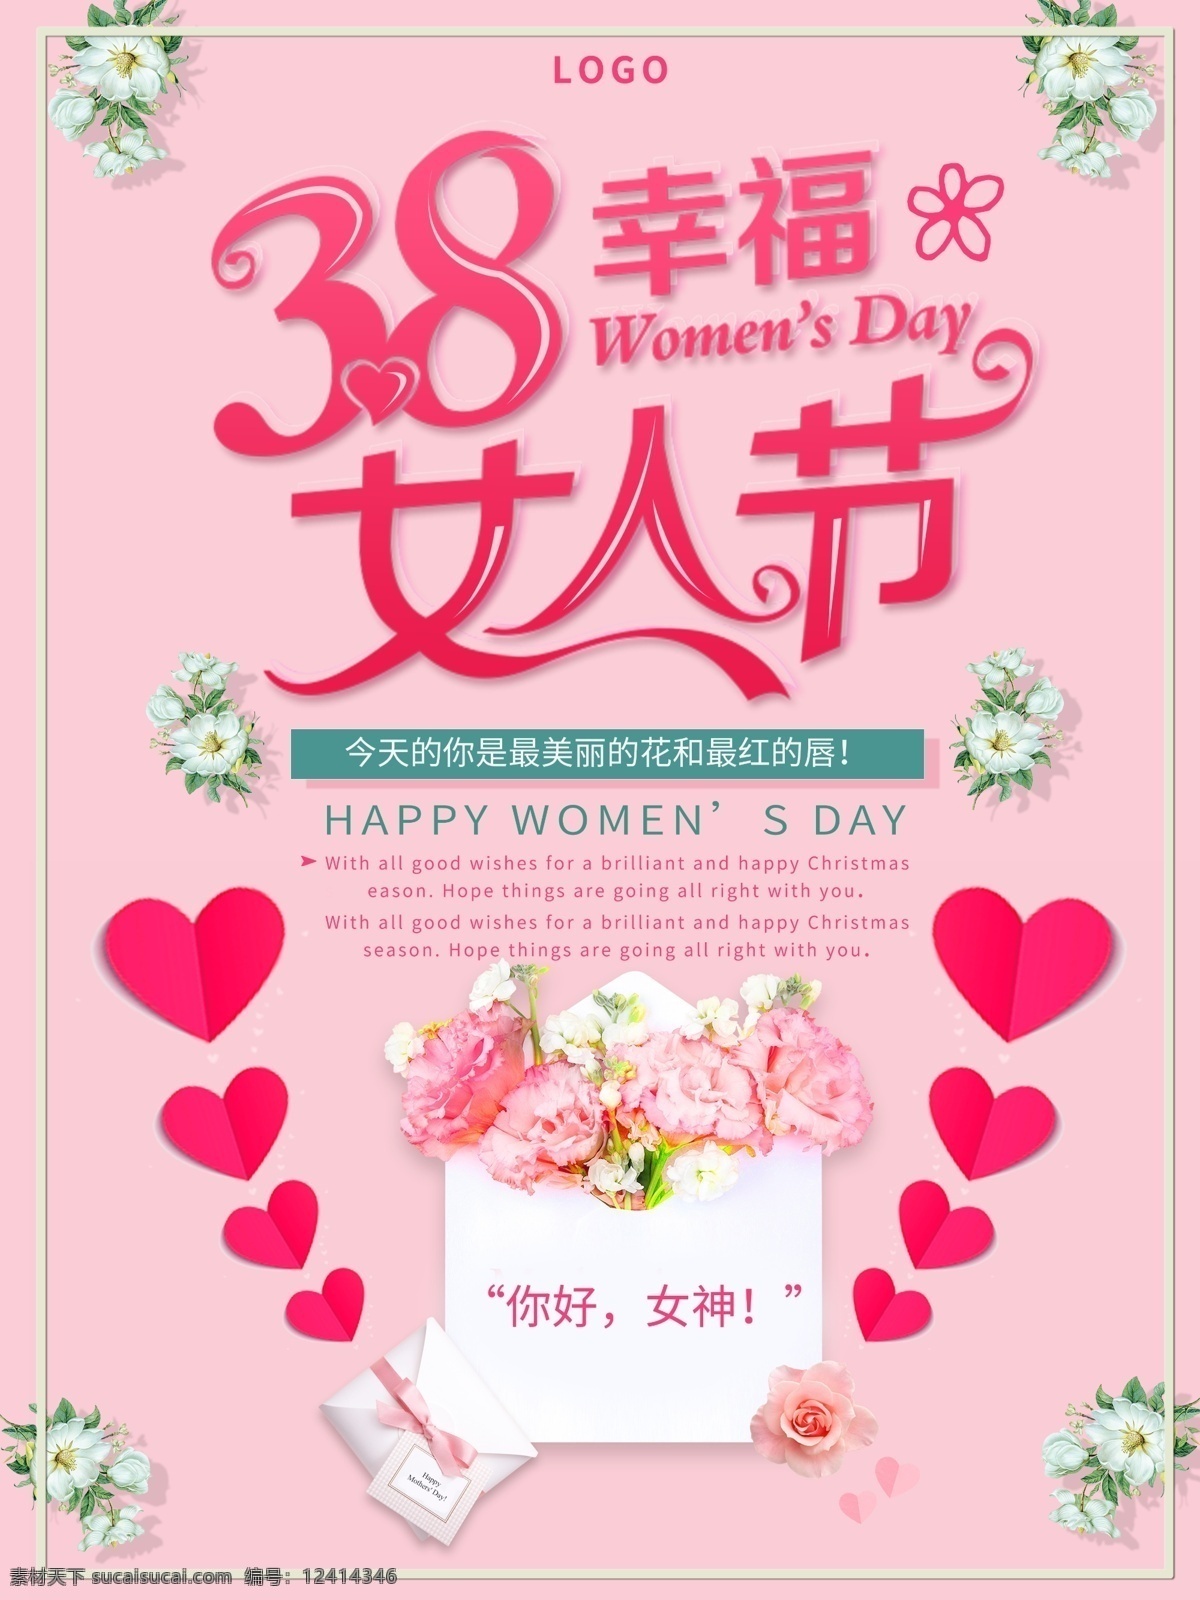 粉色 浪漫 唯美 花朵 38 女神 节 妇女节 宣传海报 妇女 38女神节 粉色唯美